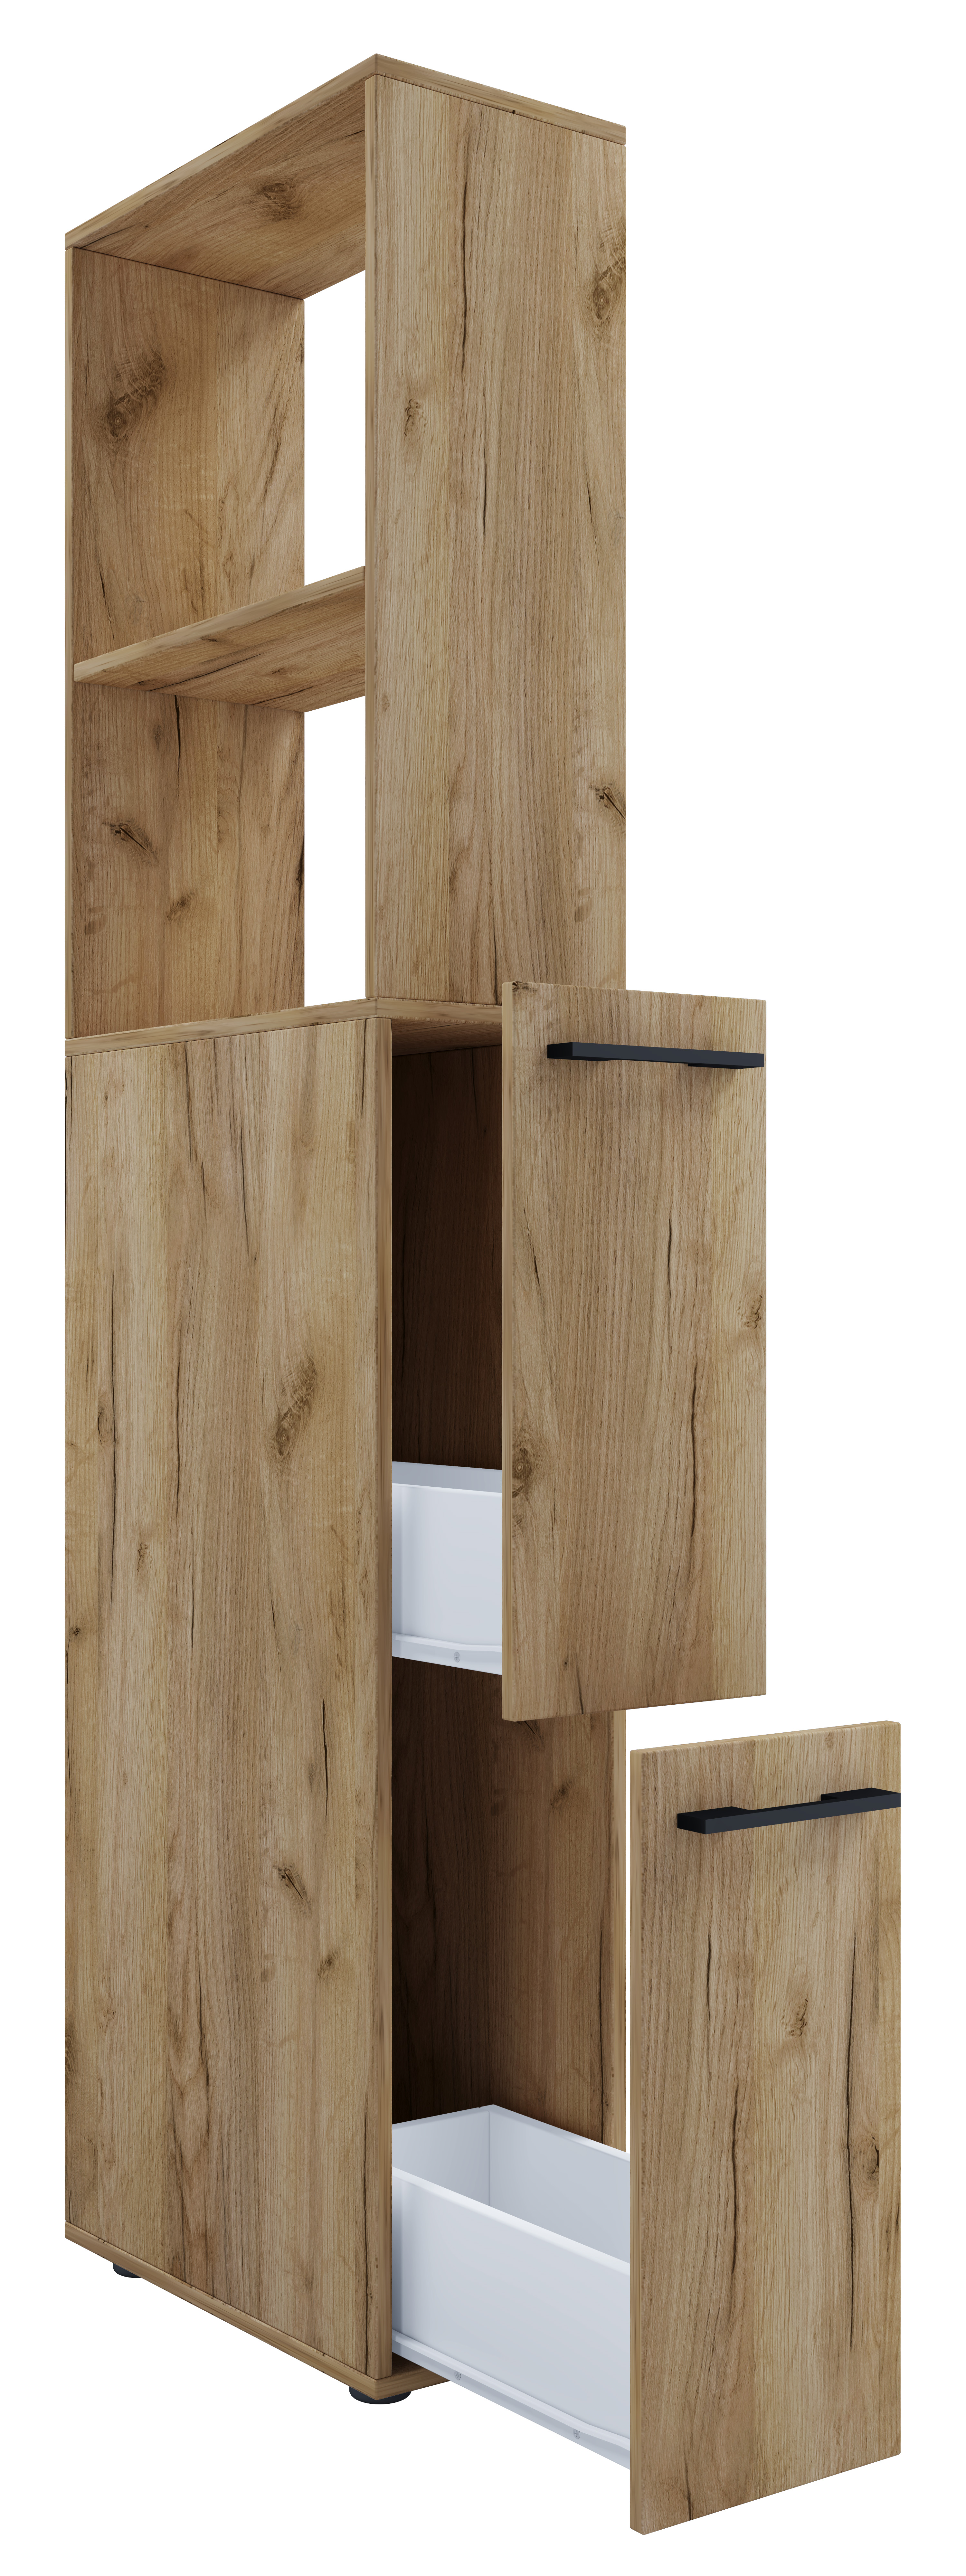 VCM NORDIC Sadilo XL badrumsavdelare, m. 2 öppna fack och 2 lådor - naturligt trä